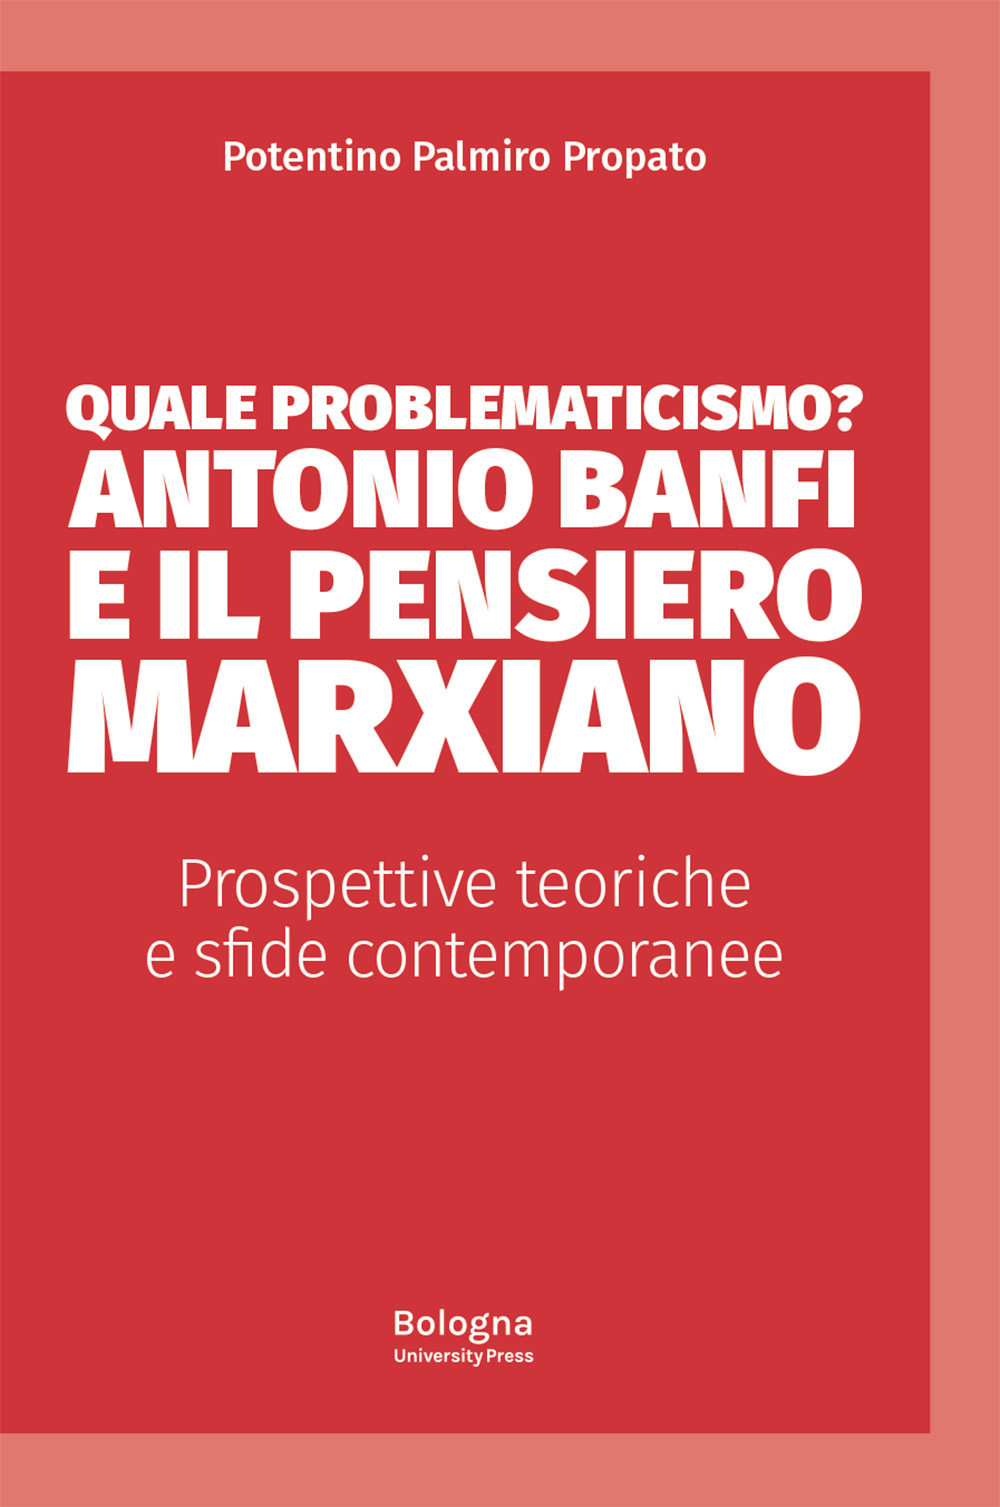 Quale problematicismo? Antonio Banfi e il pensiero marxiano - Bologna University Press